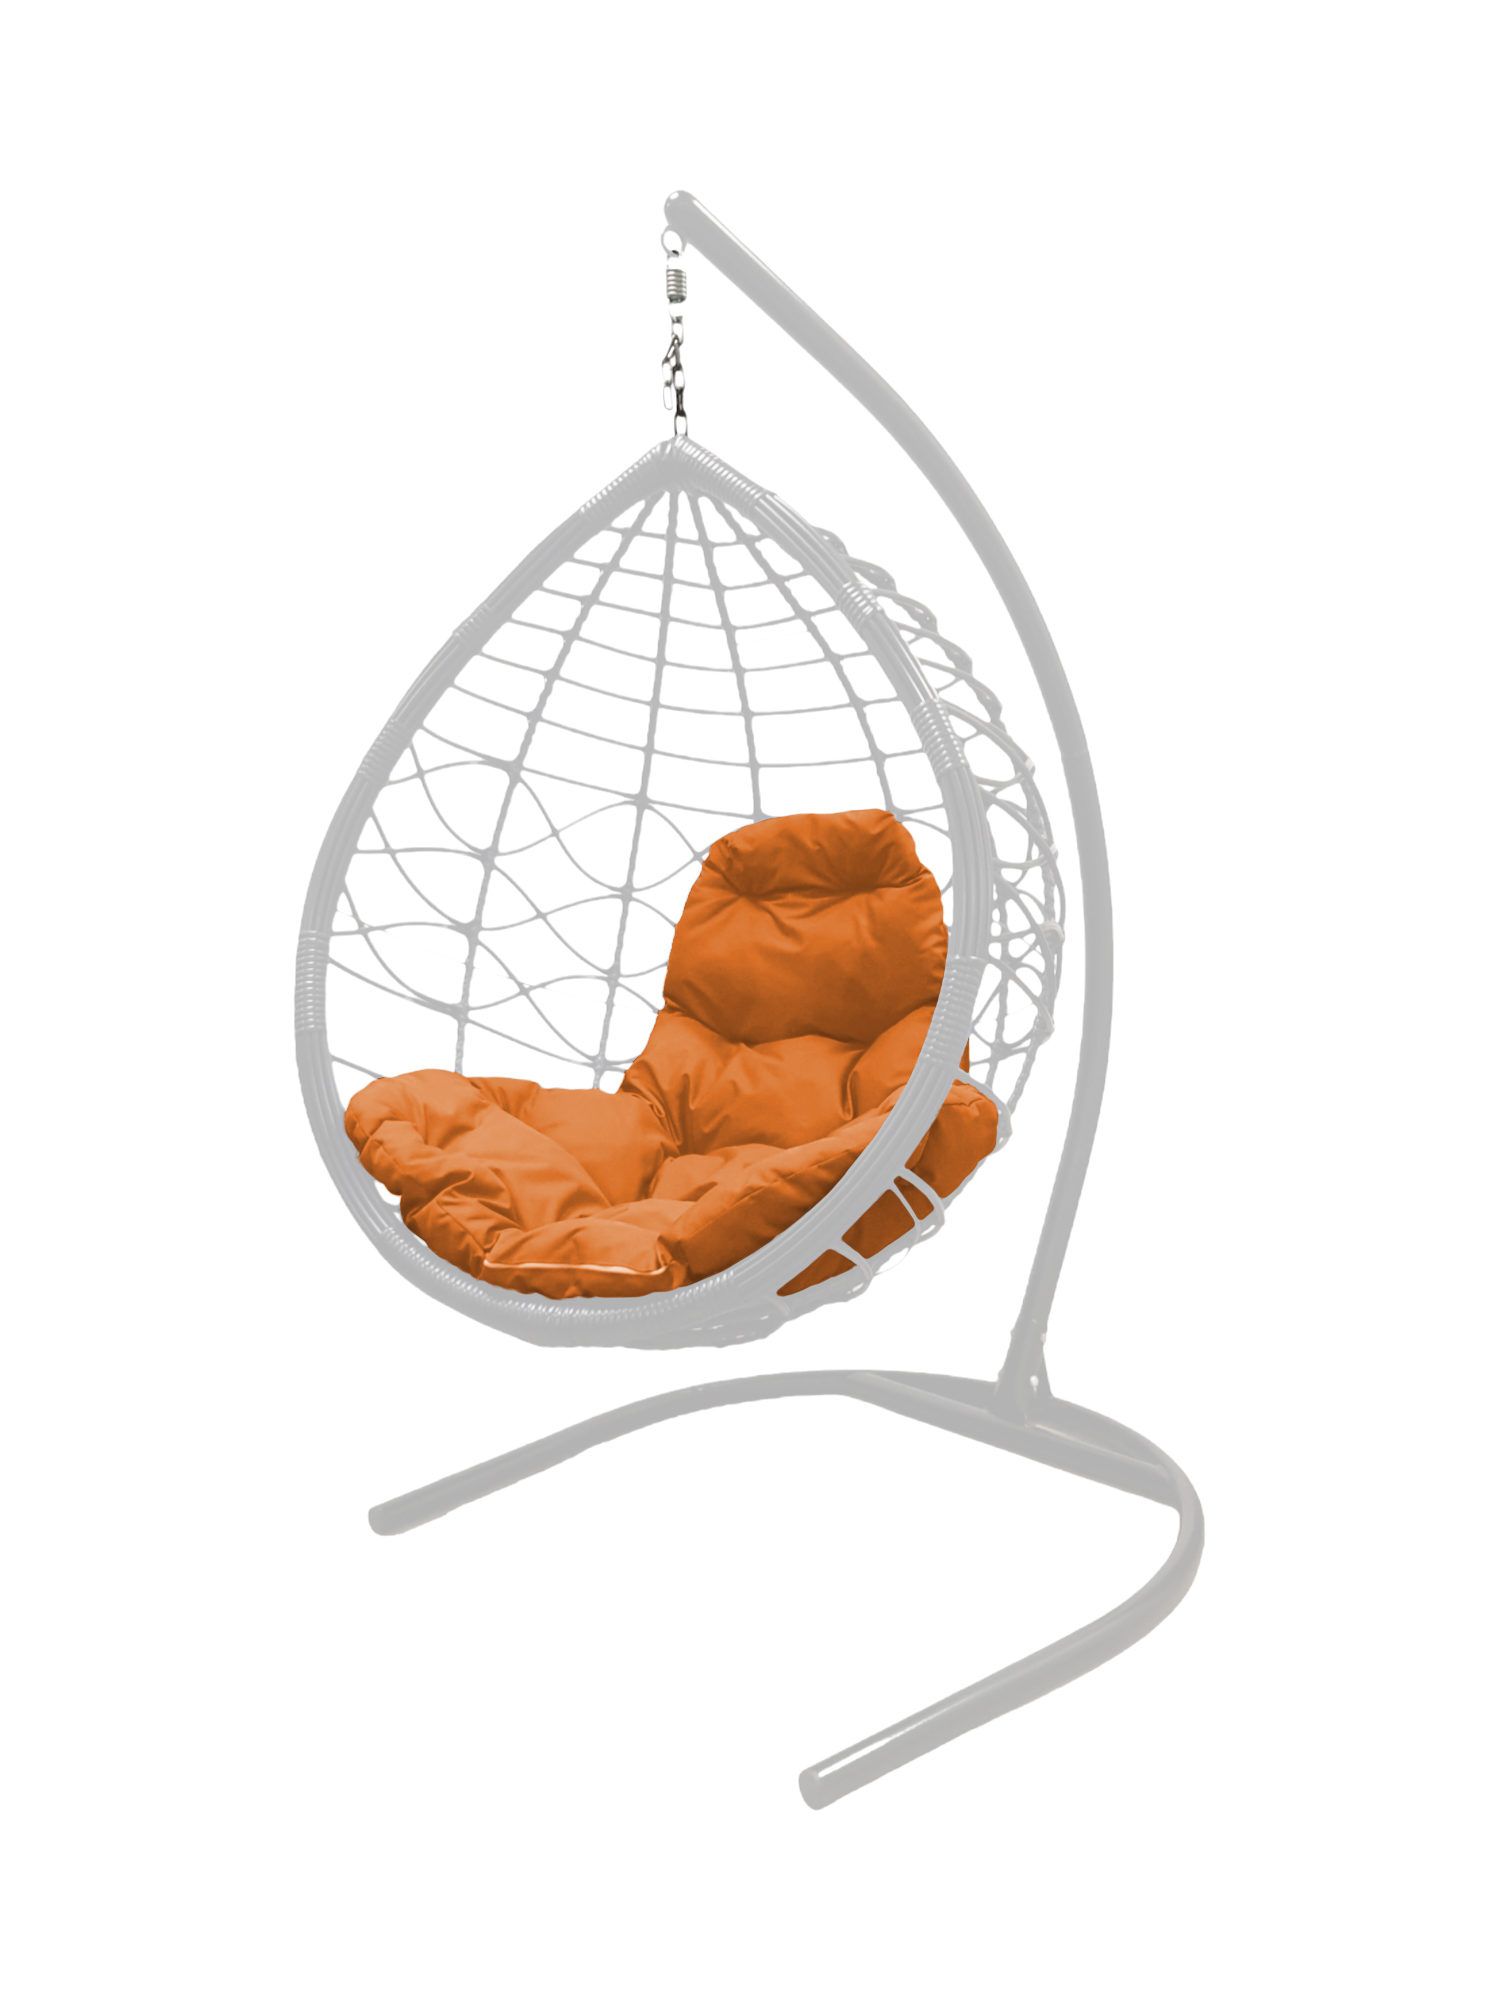 фото Подвесное кресло белое m-group капля лори ротанг 11530107 оранжевая подушка